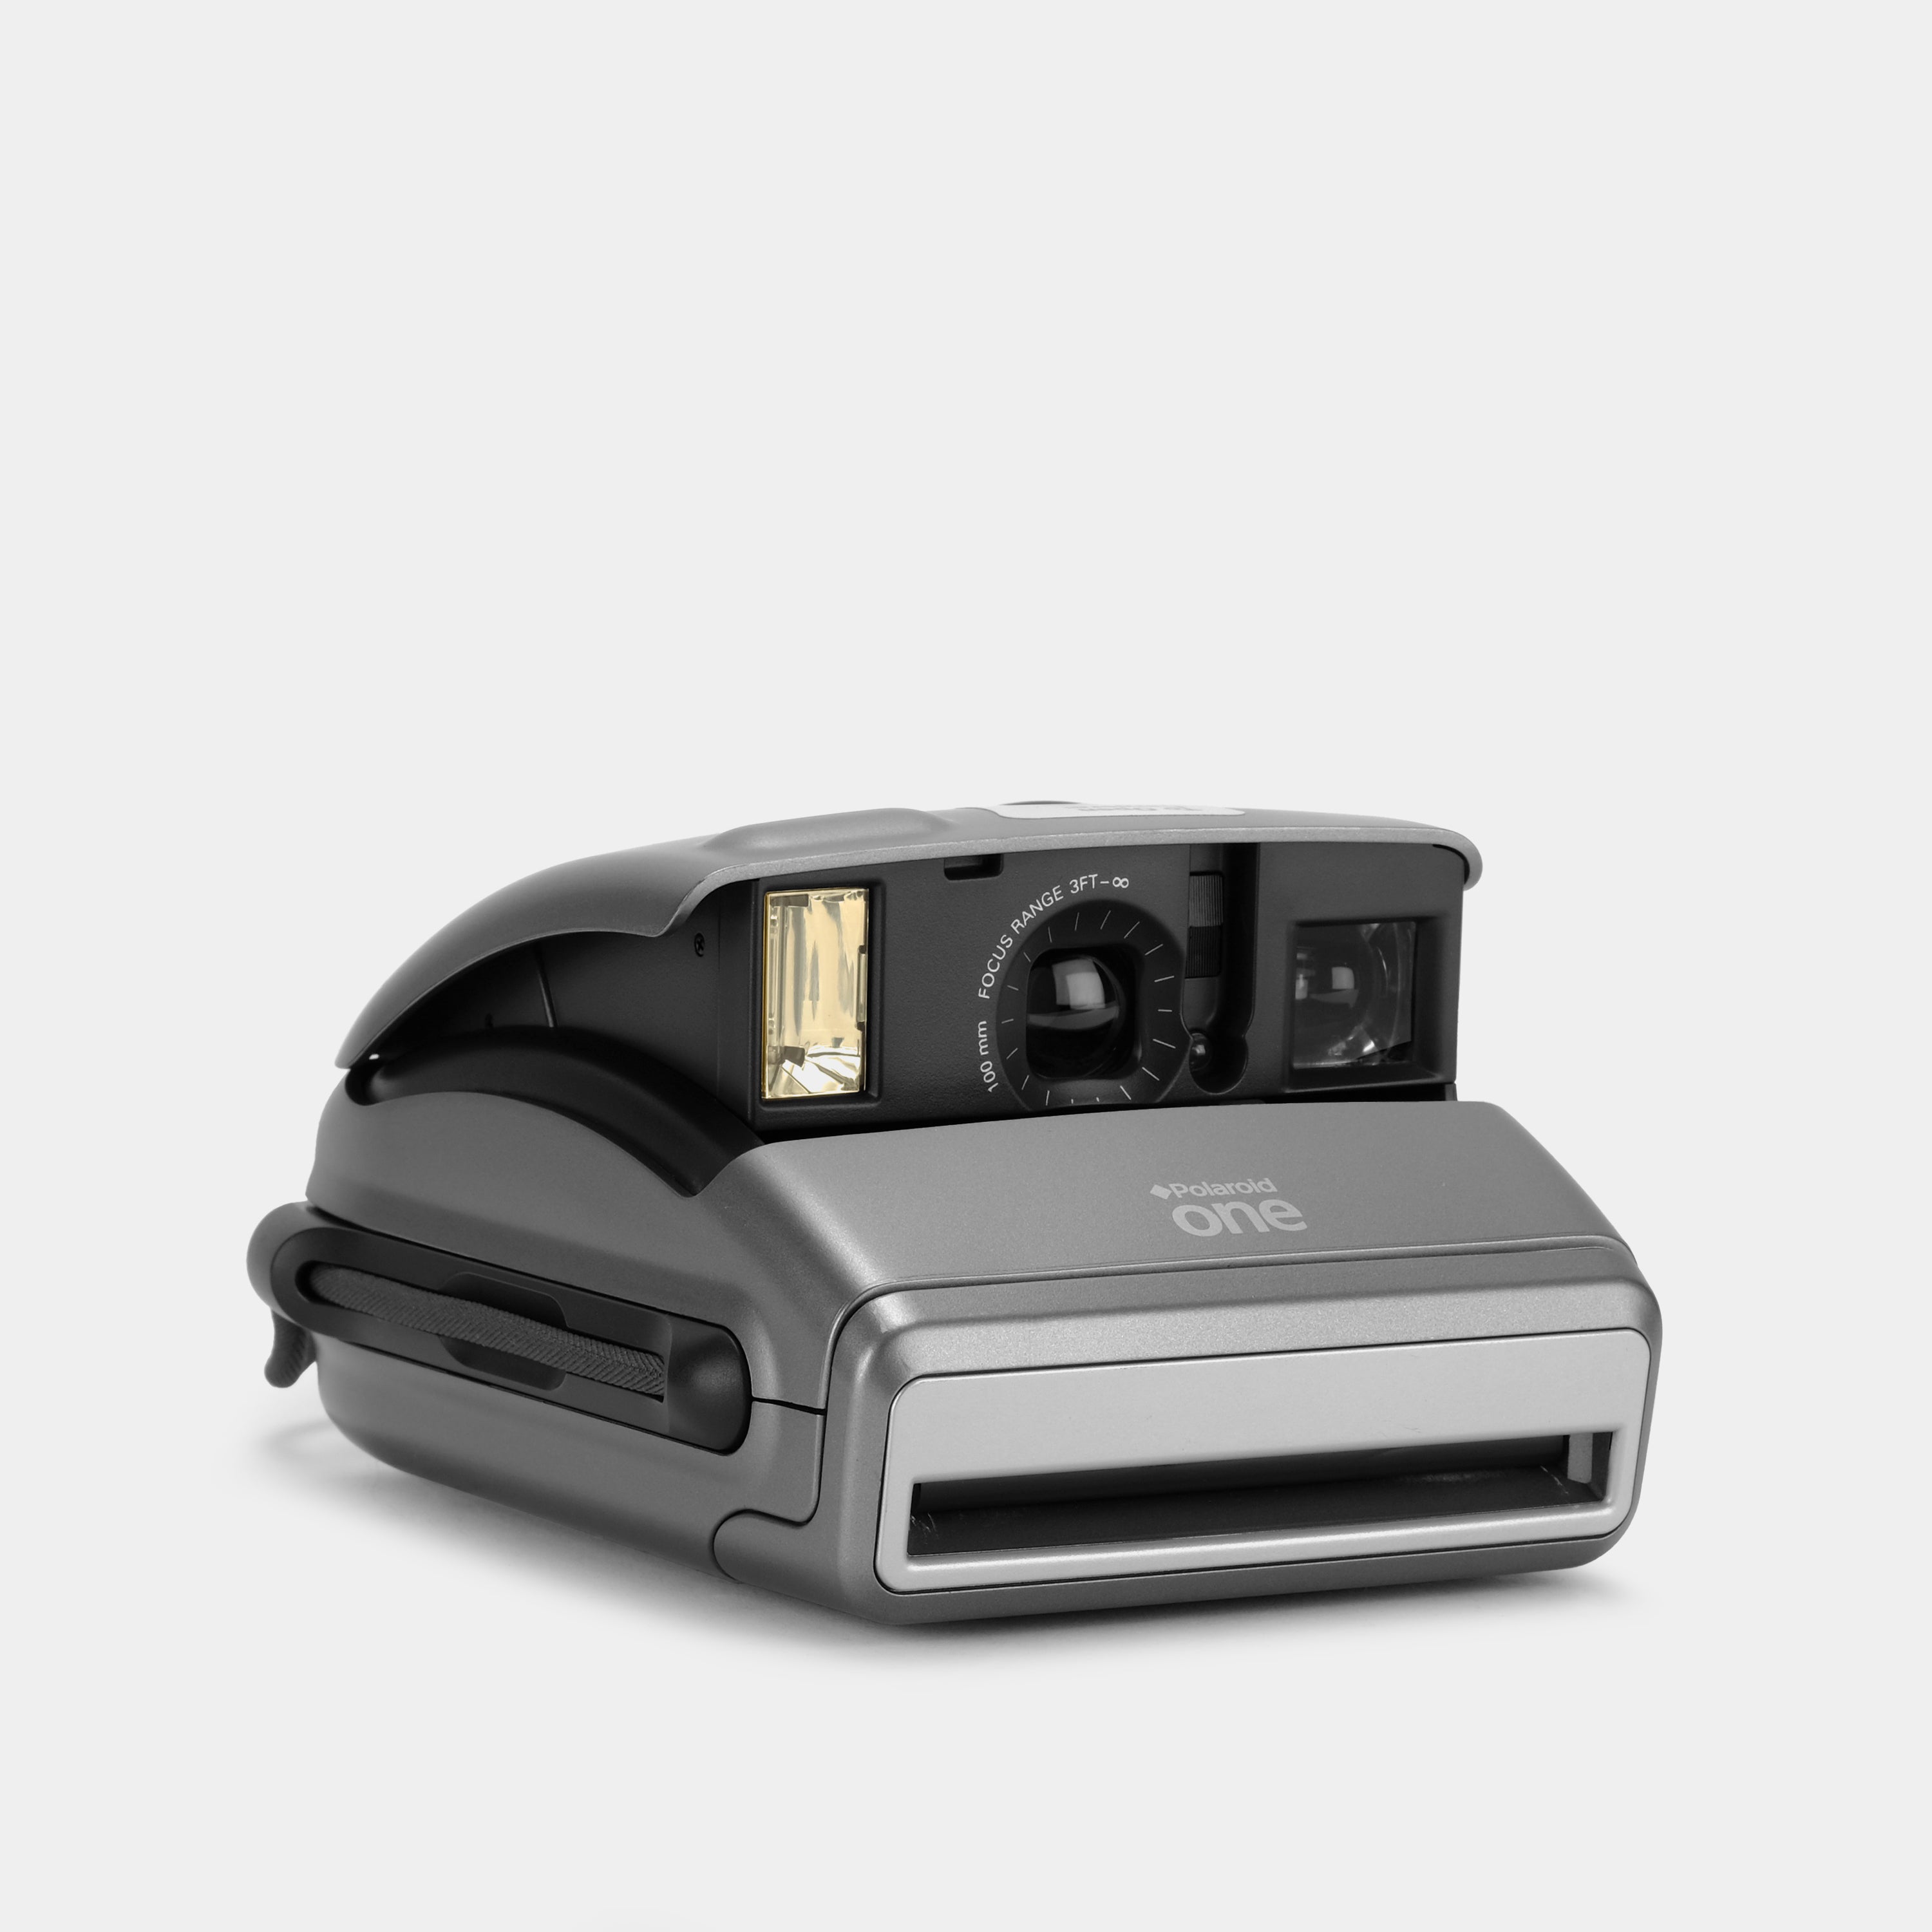 Polaroid 600 One Instant Film Camera